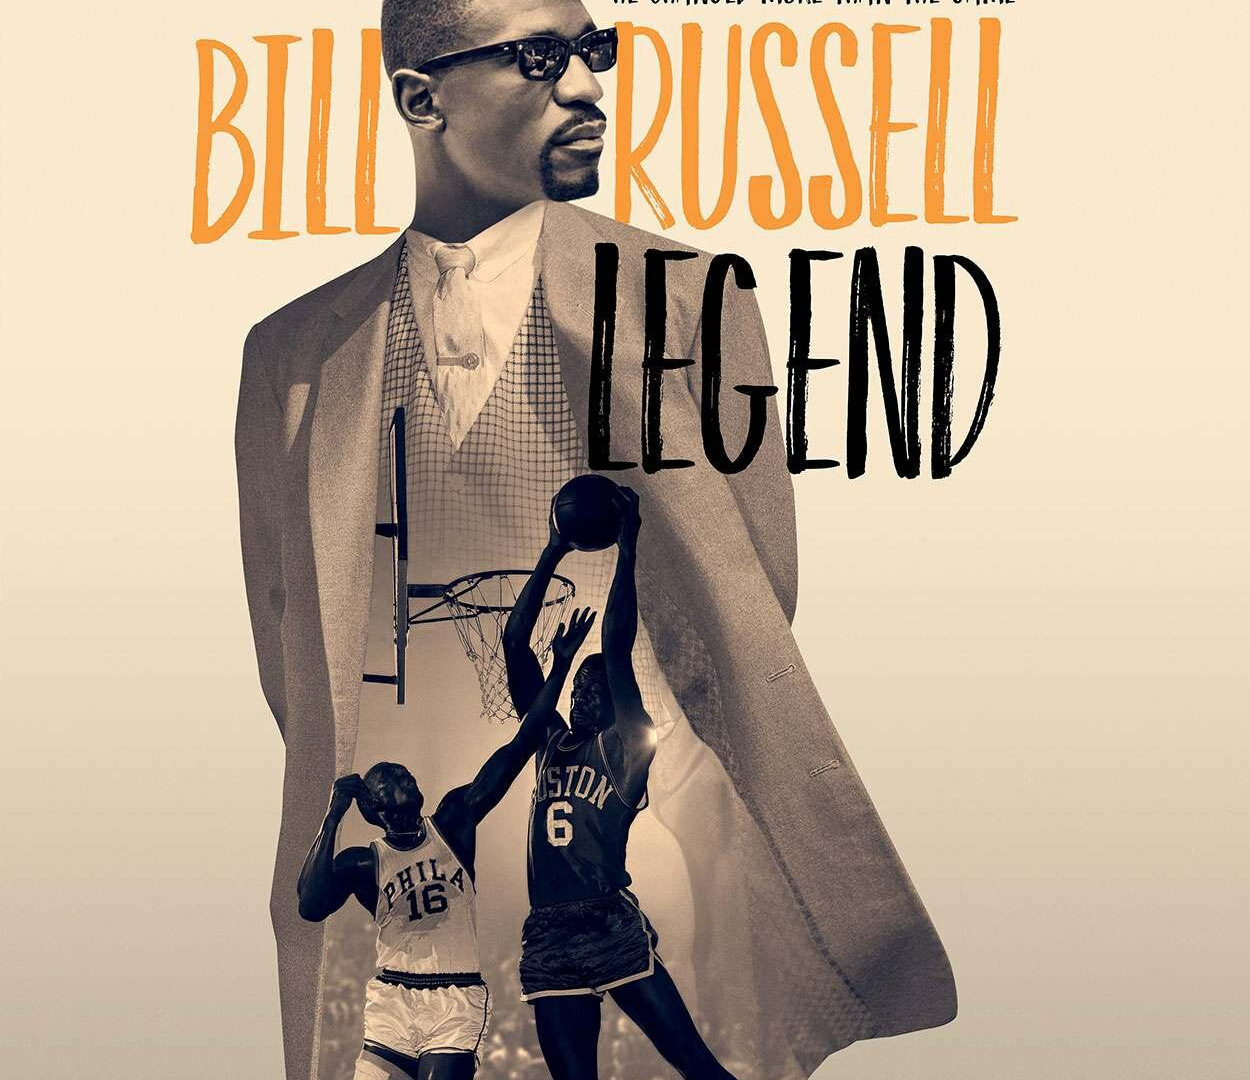 Show Bill Russell: Legend